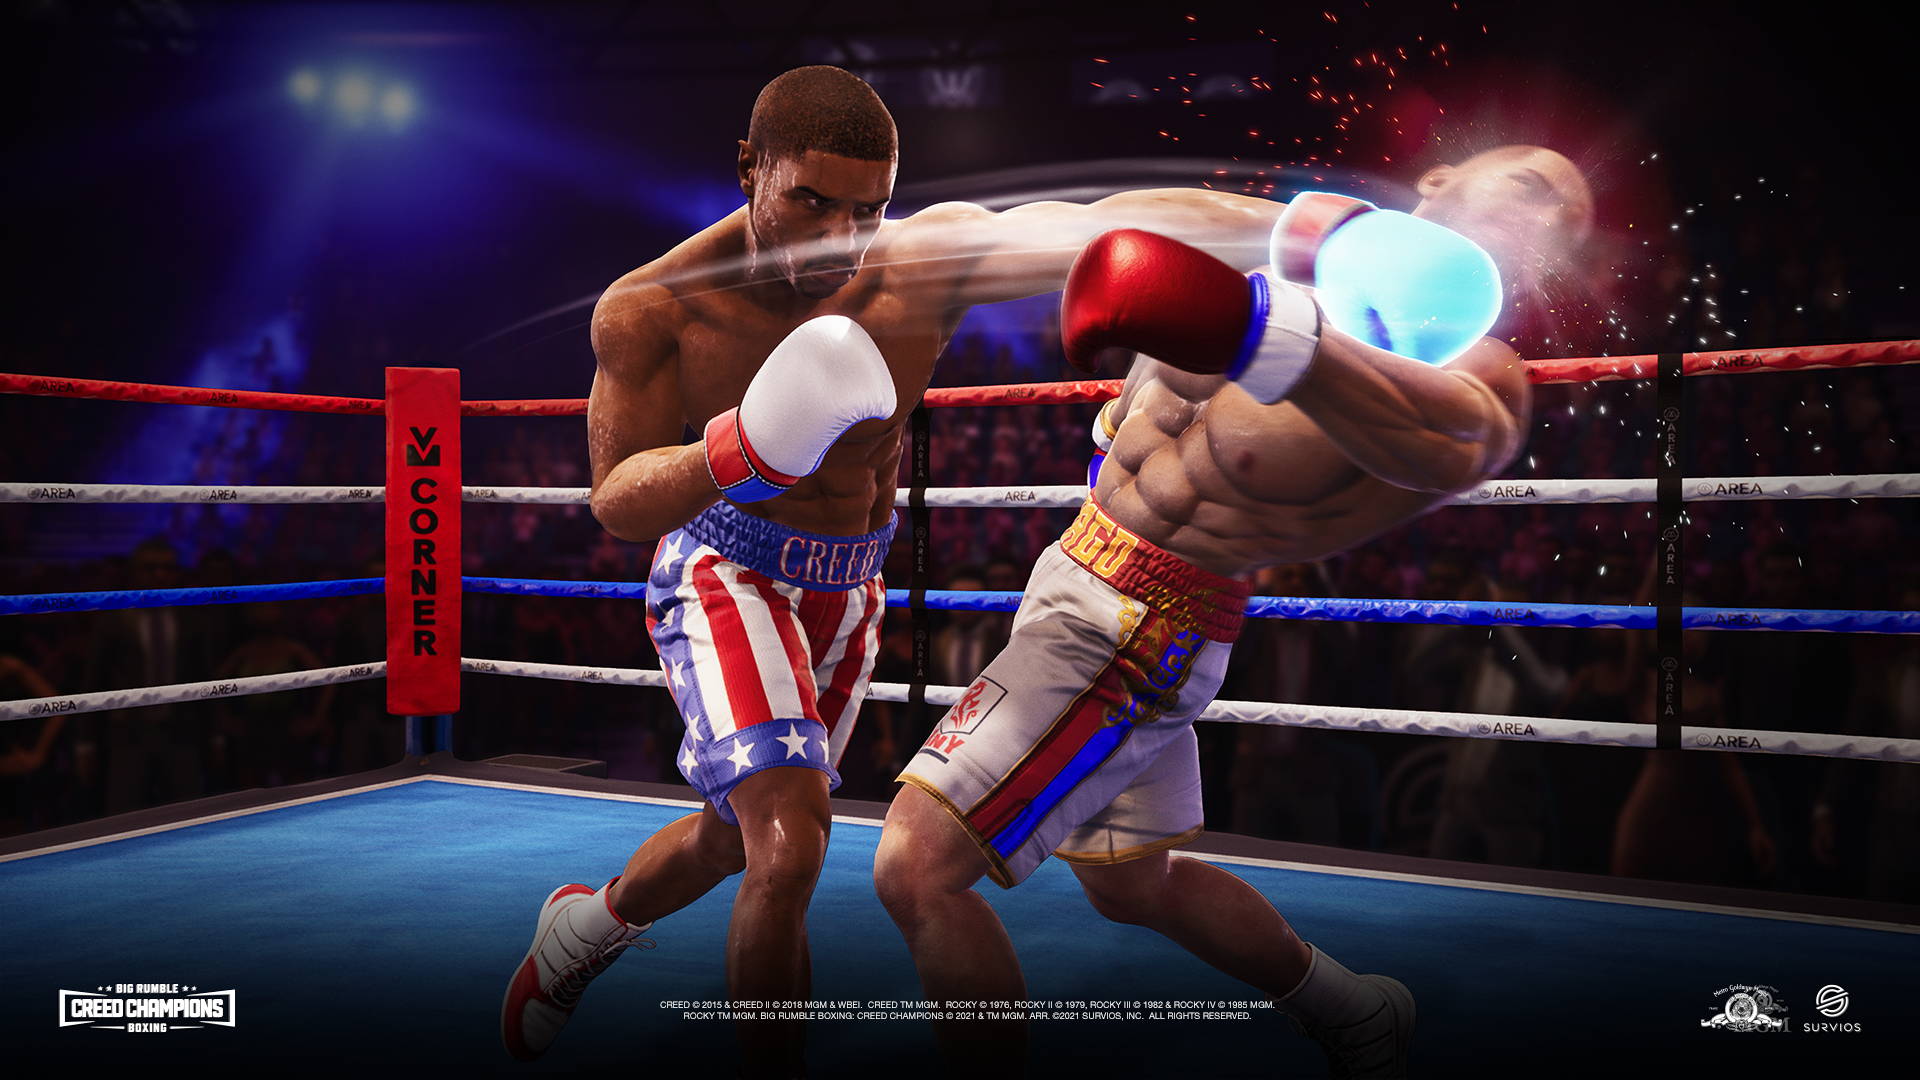 Big Rumble Boxing Creed Champions, un jeu de boxe chez Koch Media -  Playscope